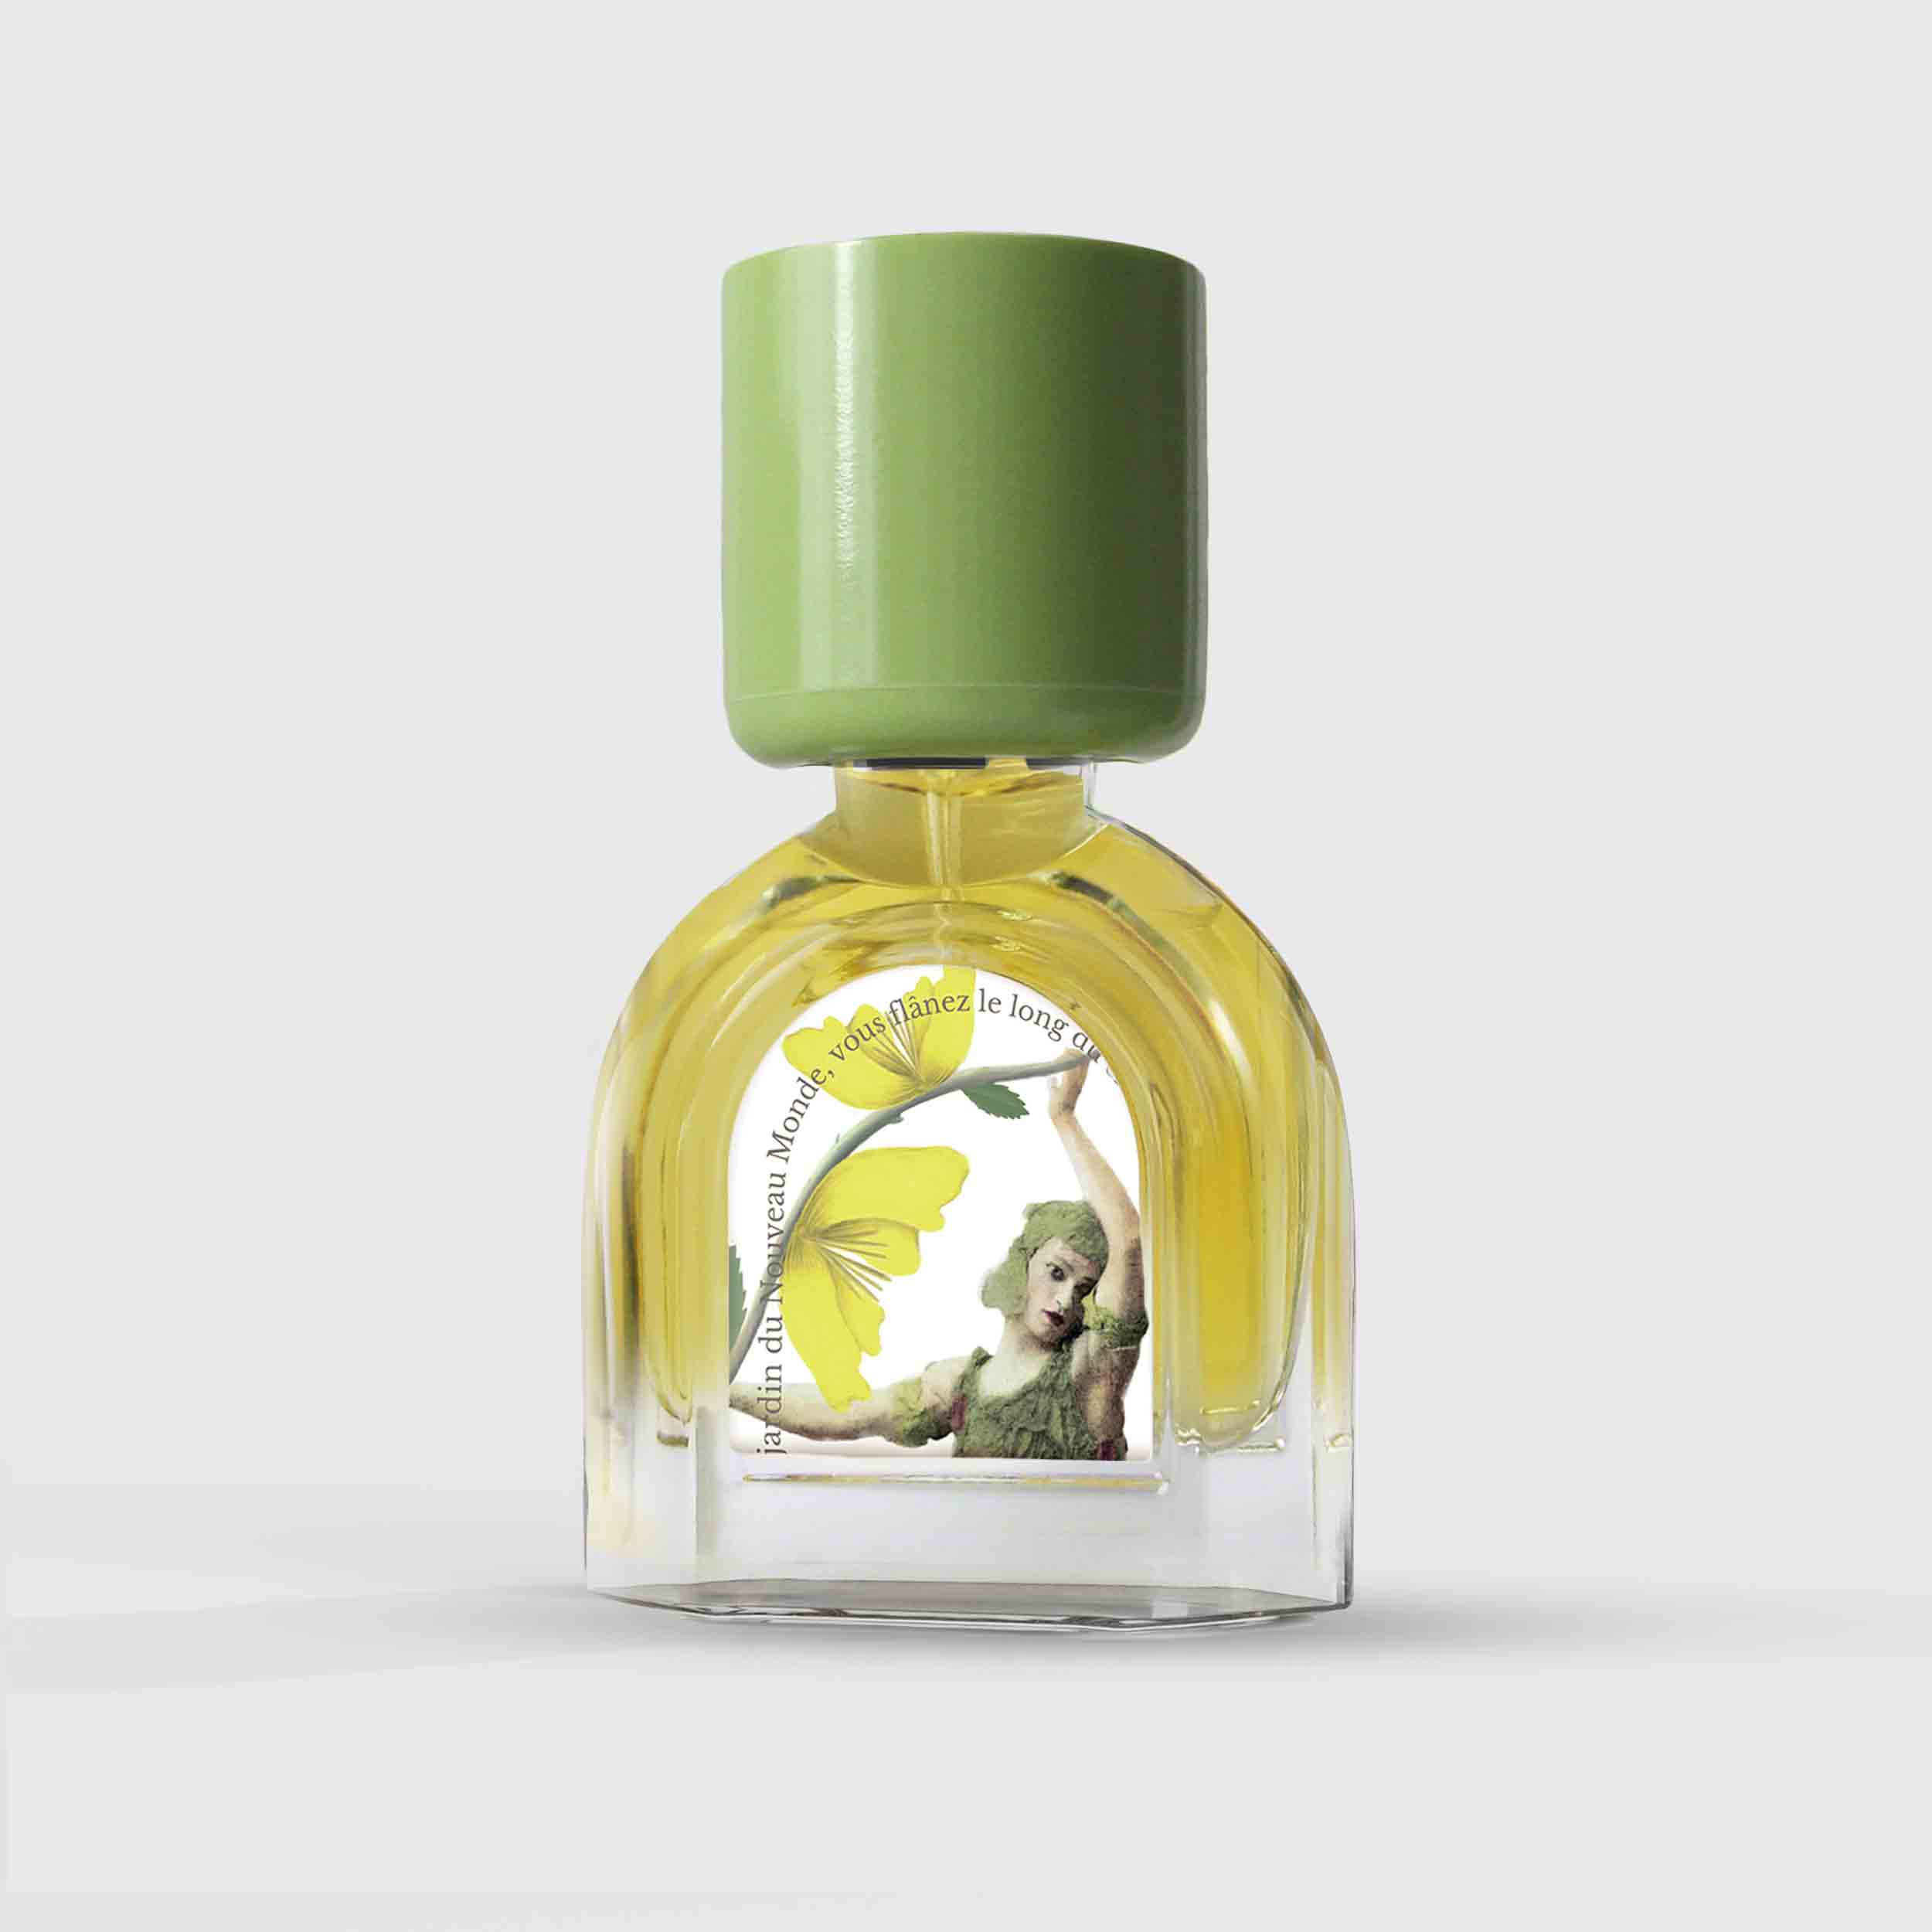 Bois Tabac Virginia Eau de Parfum 15ml Bottle by Le Jardin Retrouvé